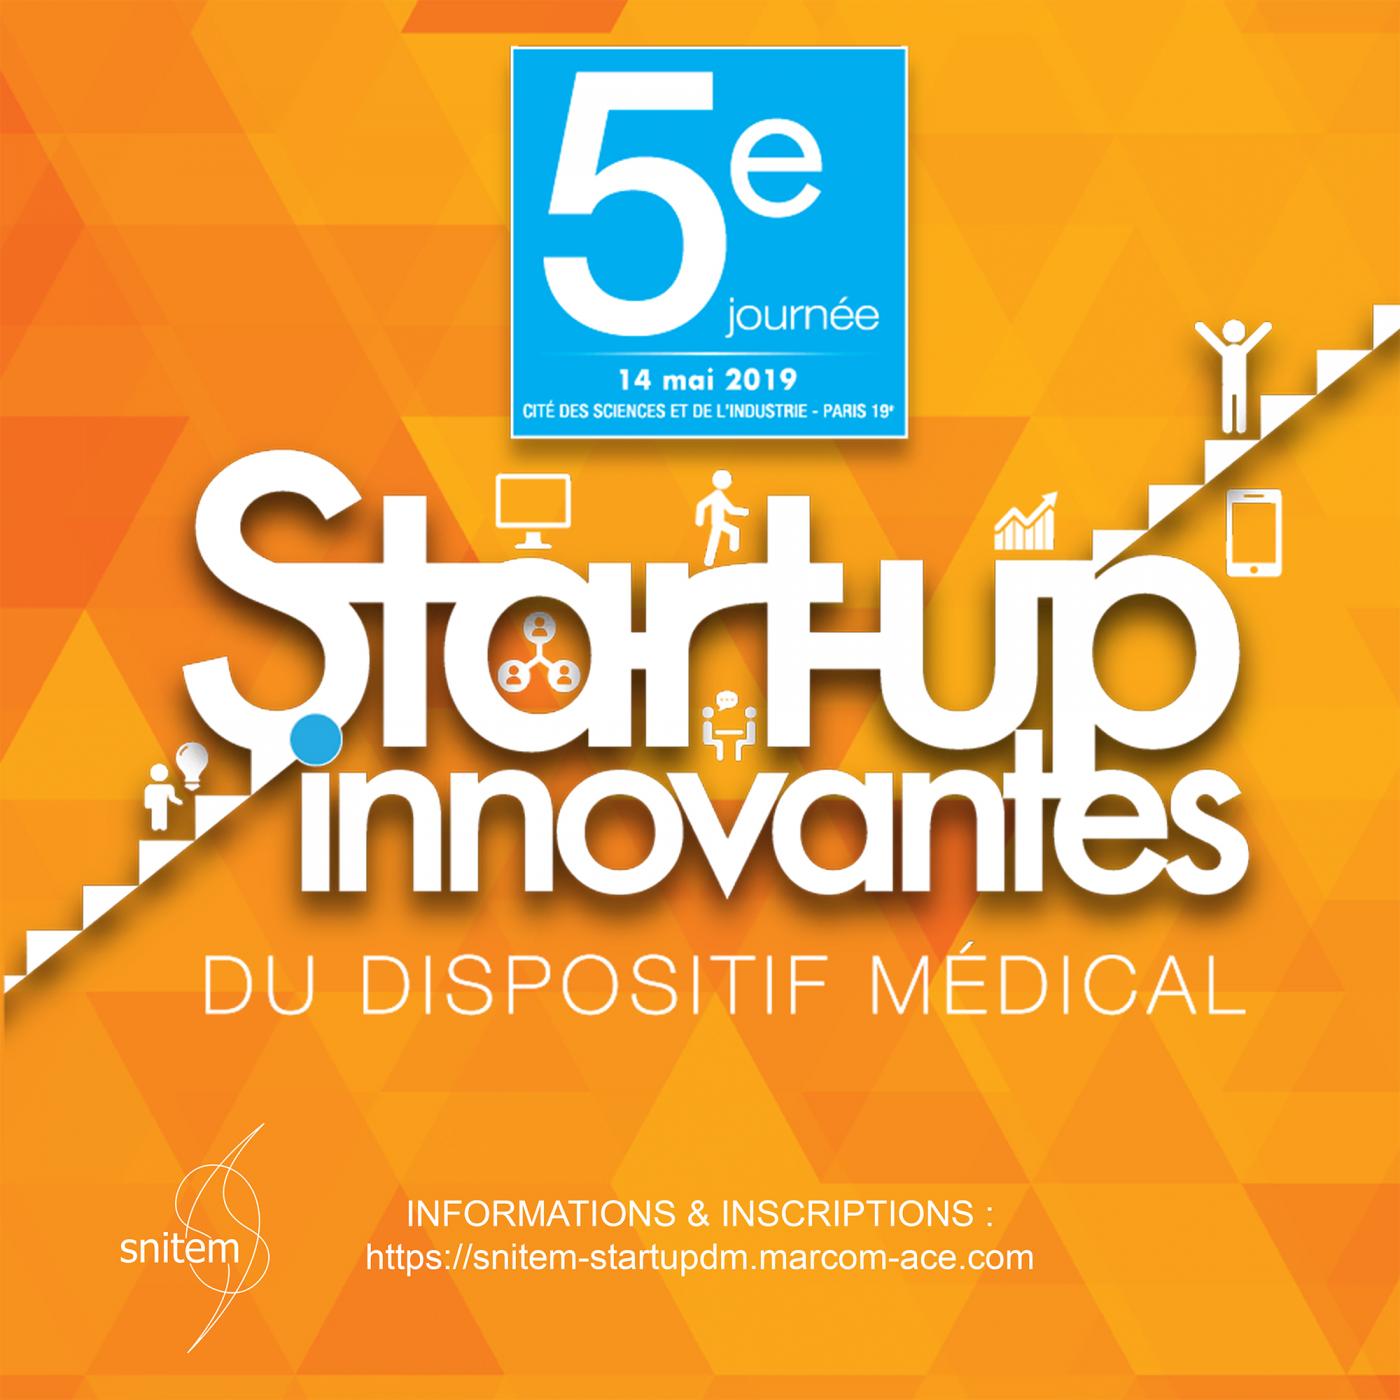 5ème journée start-up innovantes du dispositif médical